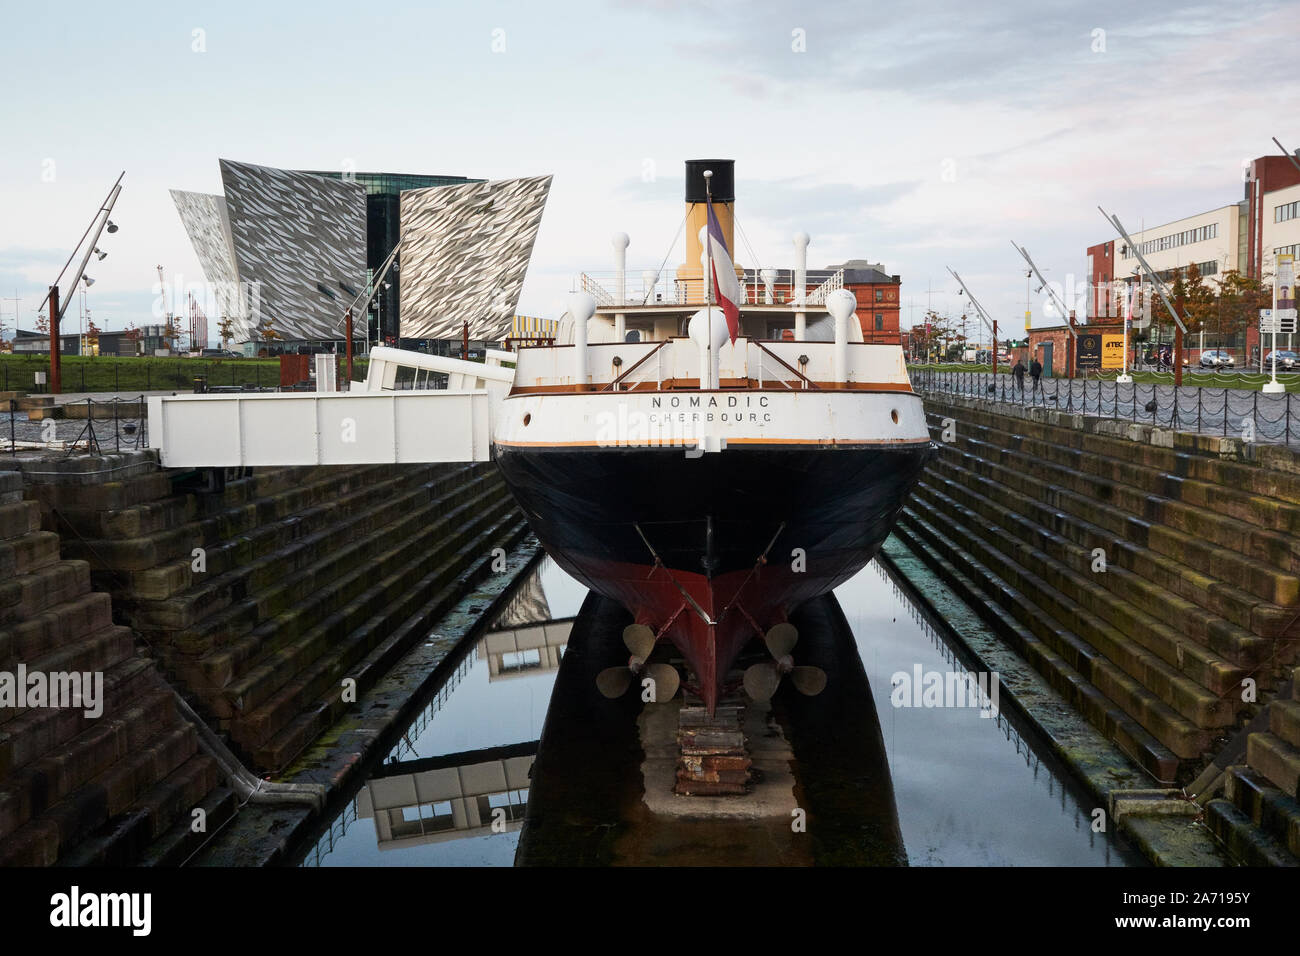 Die SS-Nomadischen, die Ausschreibung die Lieferung an die Titanic, am Hamilton Dock, der Titanic Center, Belfast, Nordirland, Großbritannien Stockfoto